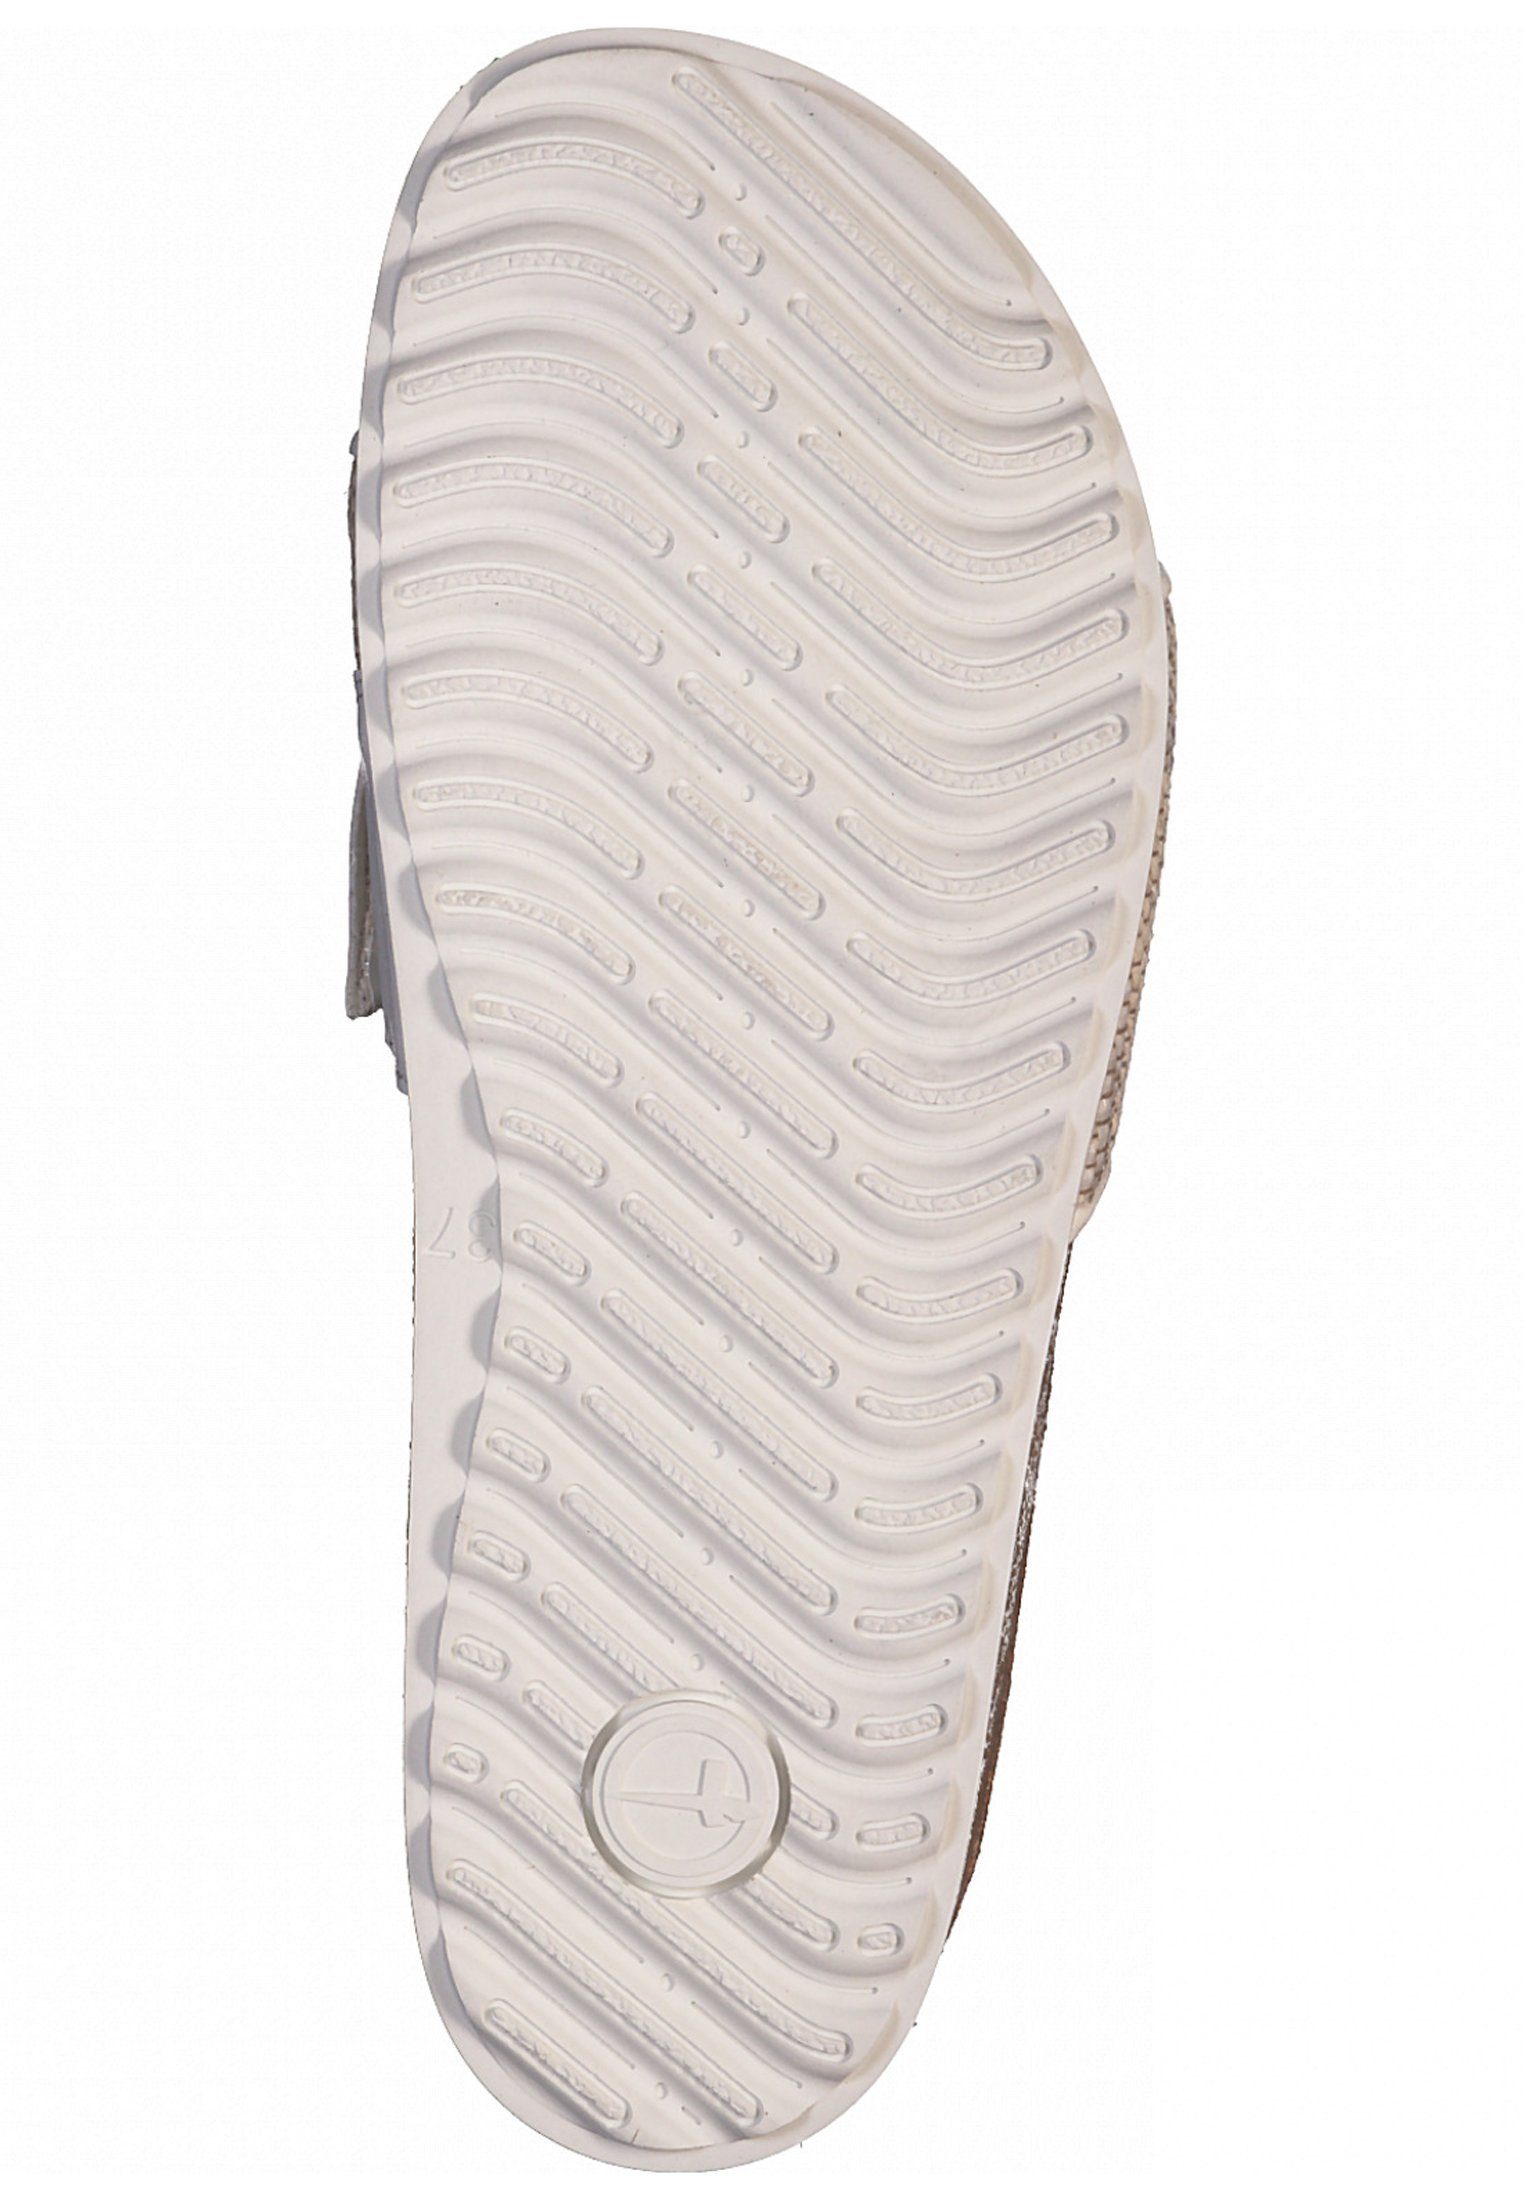 Tamaris 1-27403-28 197 White Sandale Comb